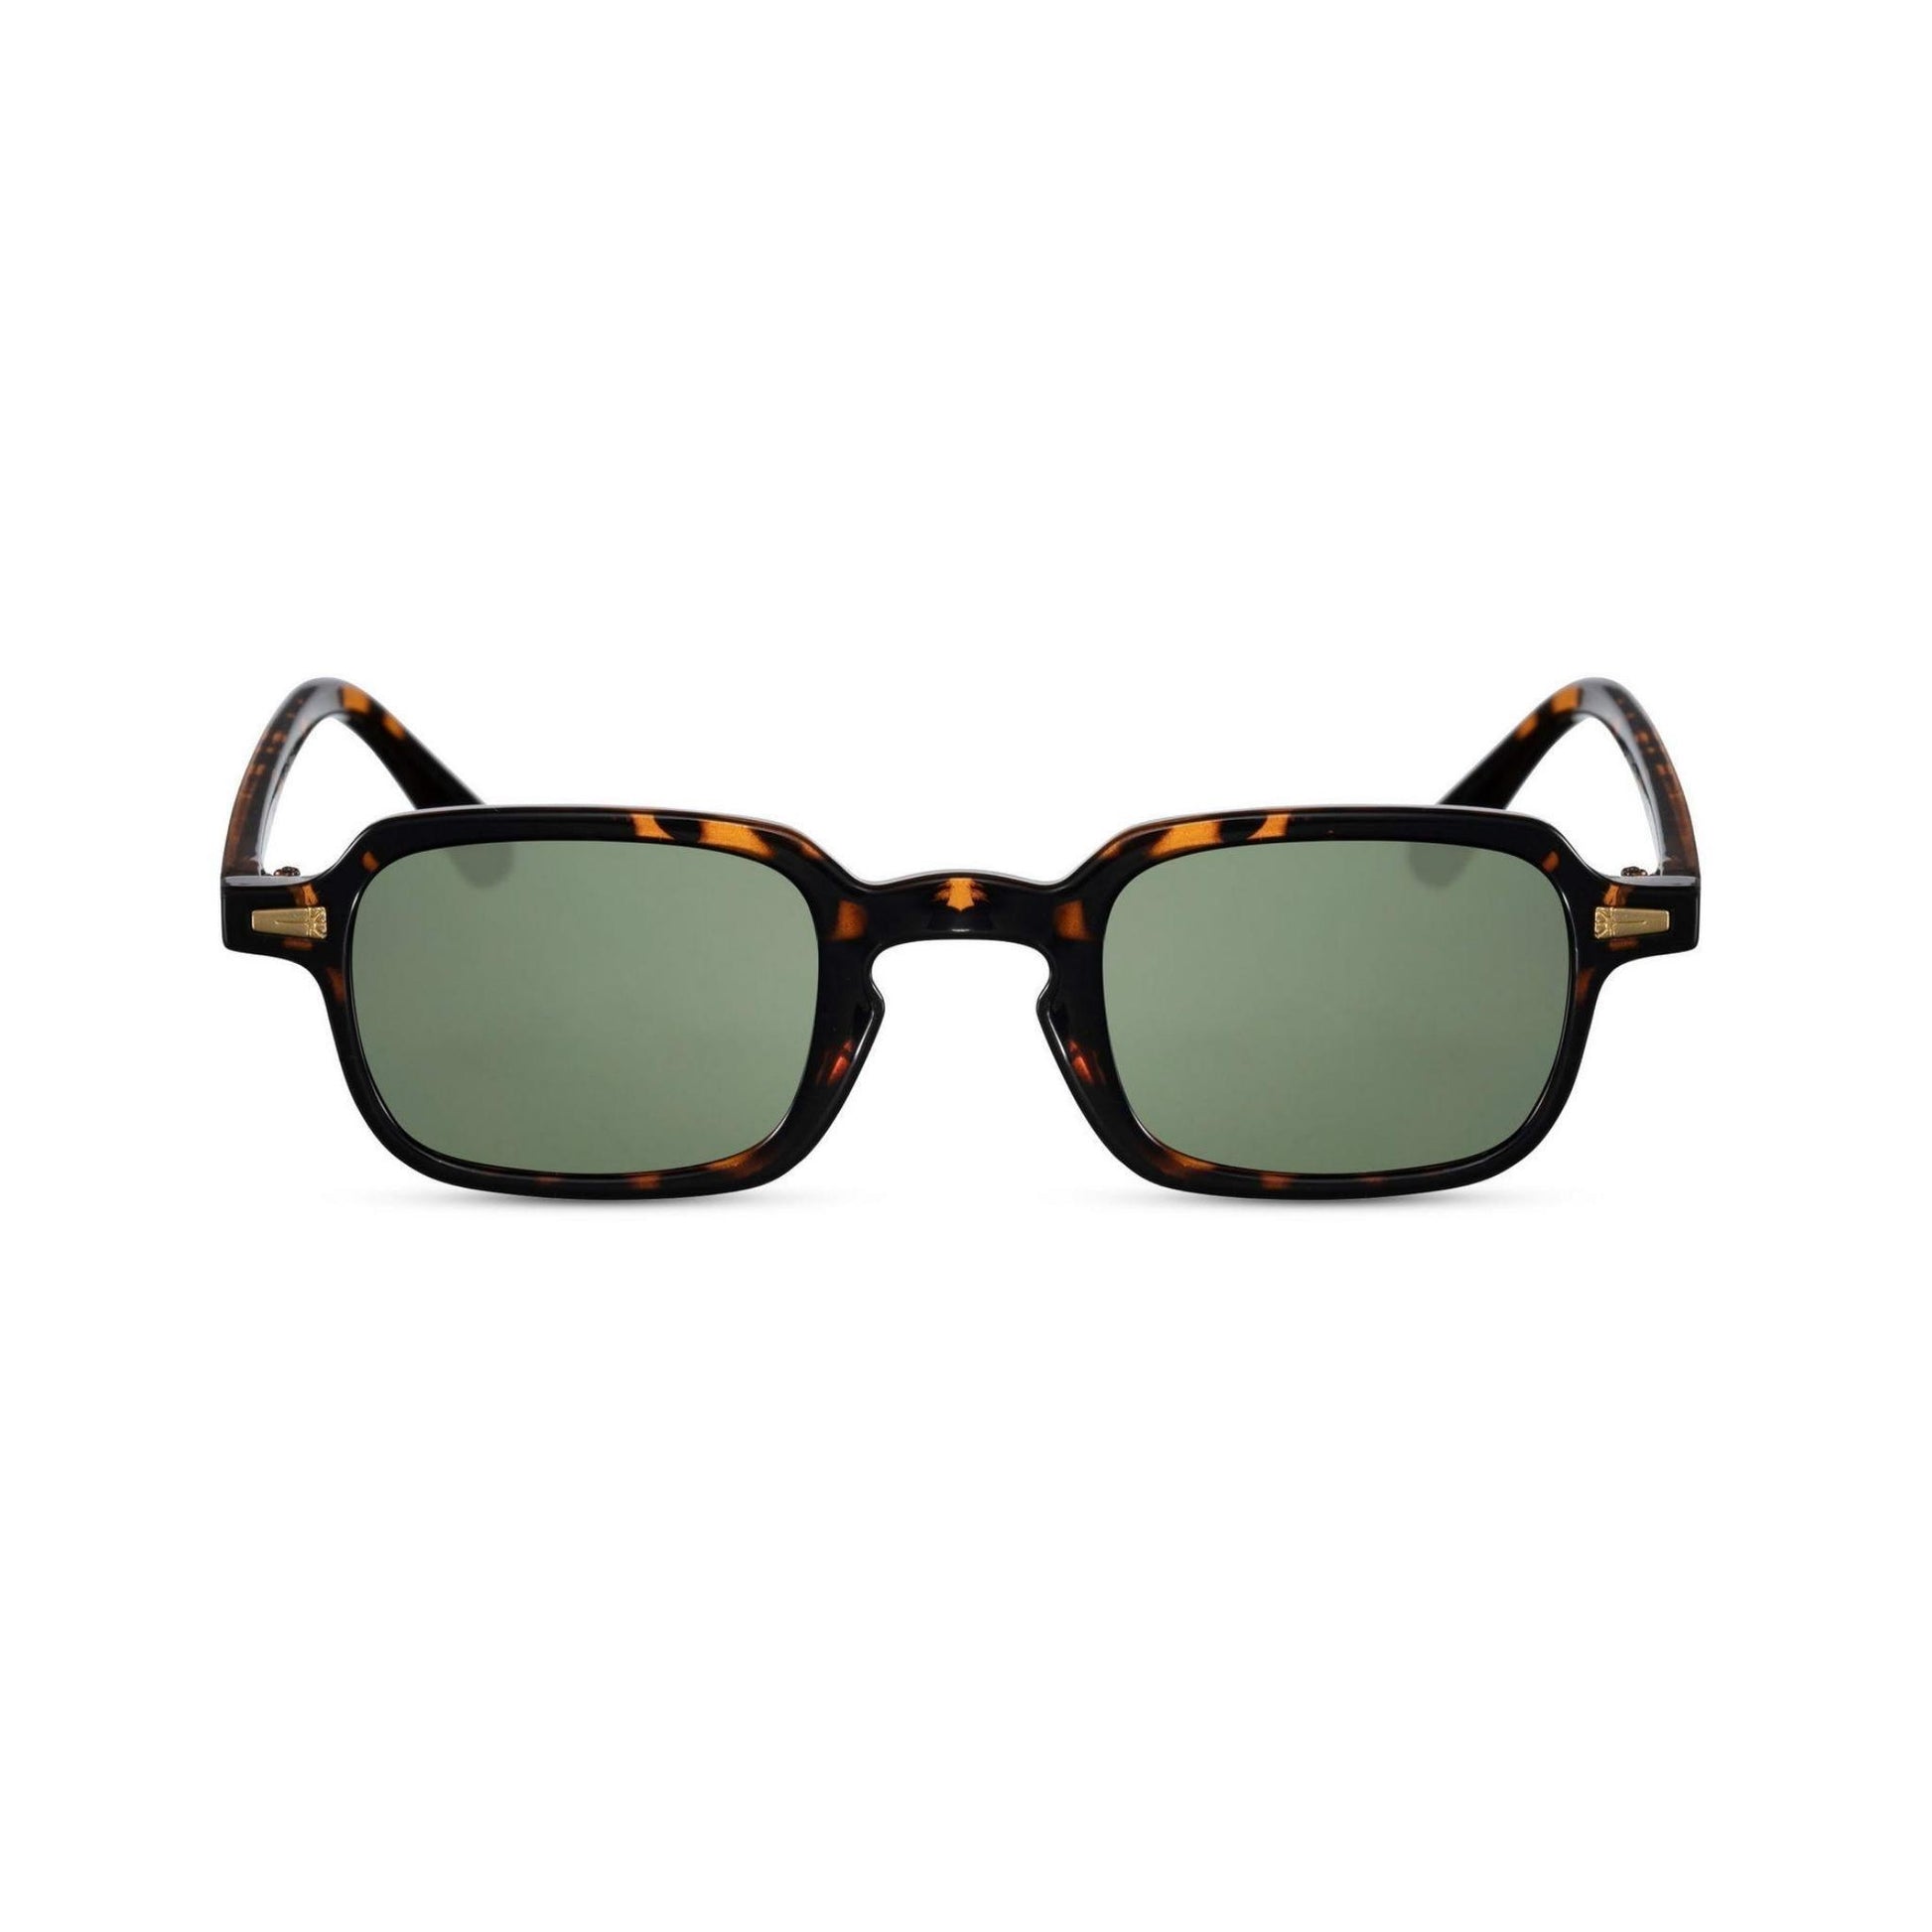 Τετράγωνα Γυαλιά ηλίου Luminous της Exposure Sunglasses με προστασία UV400 με καφέ σκελετό και πράσινο φακό.